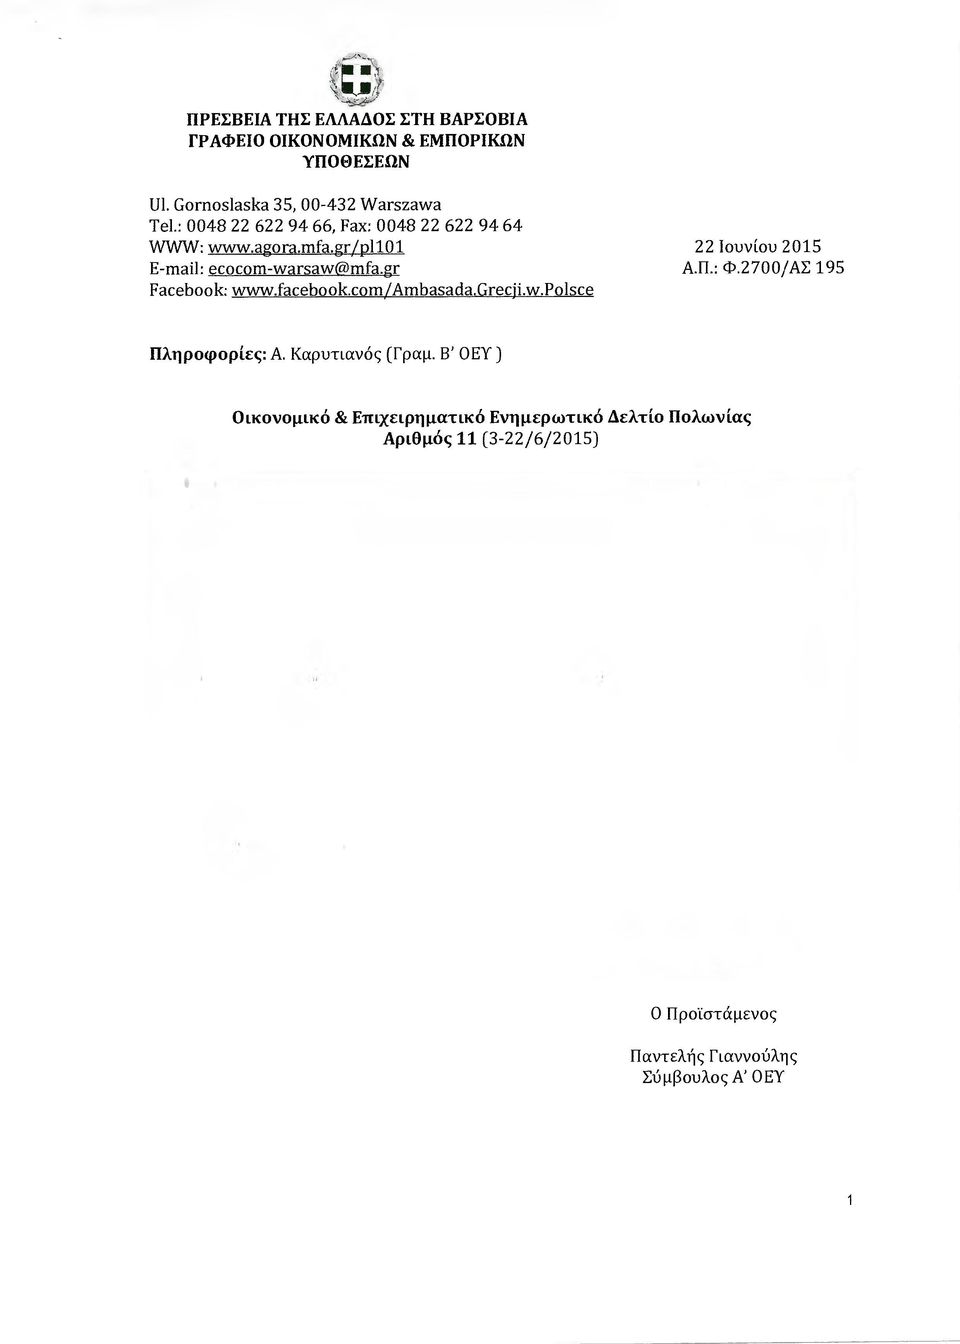 Β' ΟΕΥ ) Οικονοµικά & Επιχειρηµατικό Ενηµερωτικά ελτίο Πολωνίας Αριθµός 11 (3-22/6/2015) 1 Οικονοµικοί είκτες - ιαδικασία υπερβολικού ελλείµµατος -Ανεργ ία -Προβλέψεις ΟΟΣΑ/OECD -Μισθοί ηµοσίού